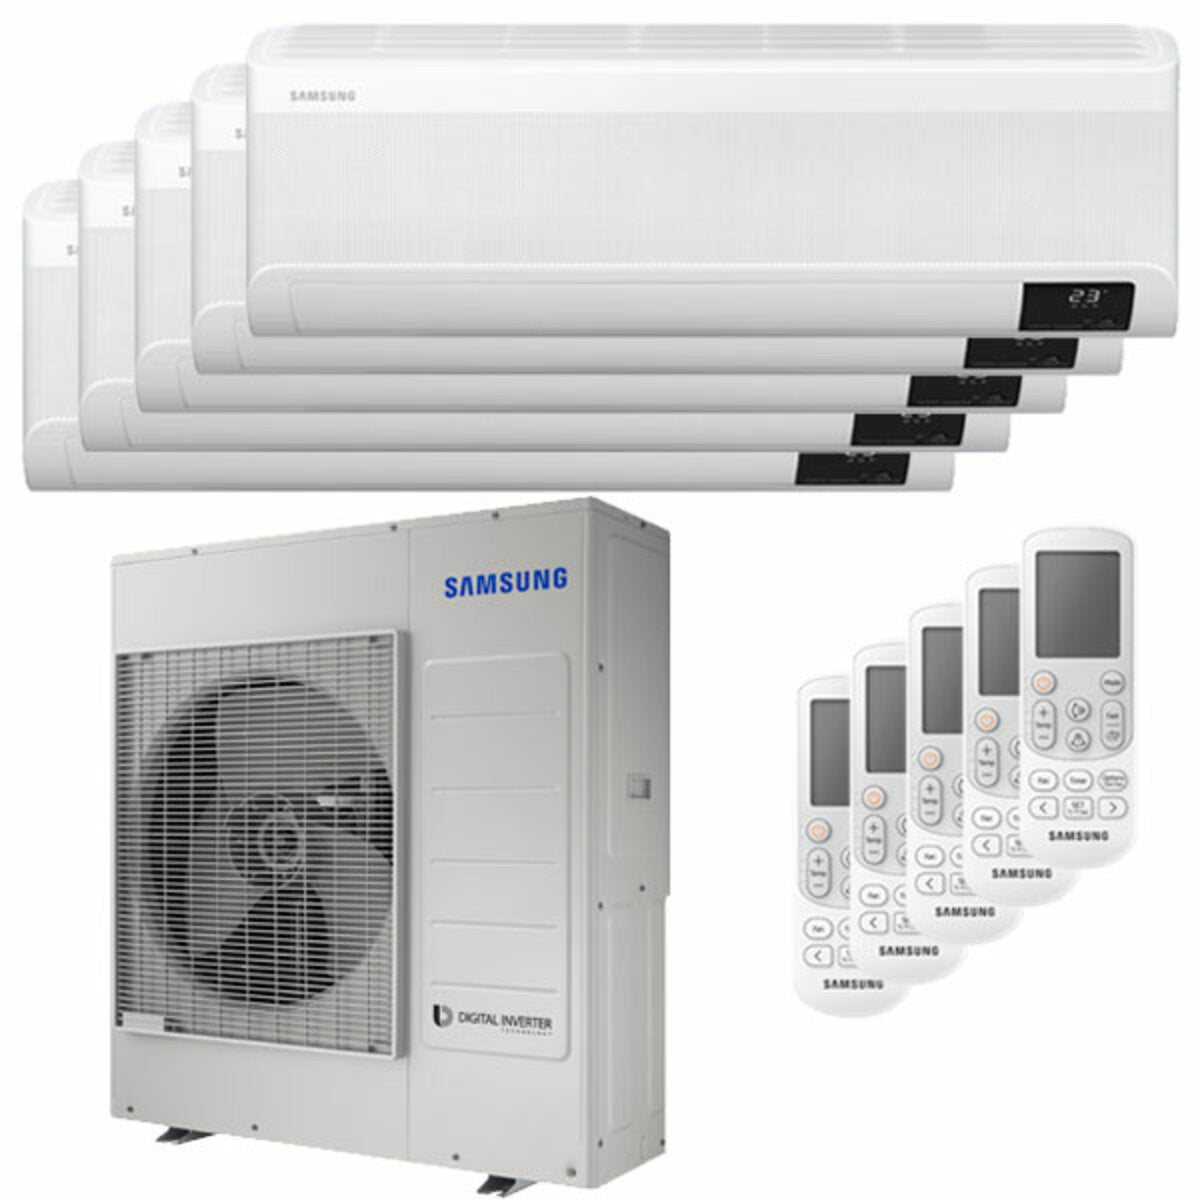 Samsung windfree Klimaanlage Avant Penta Split 7000 + 7000 + 7000 + 12000 + 12000 BTU Inverter A++ WLAN Außengerät 10,0 kW